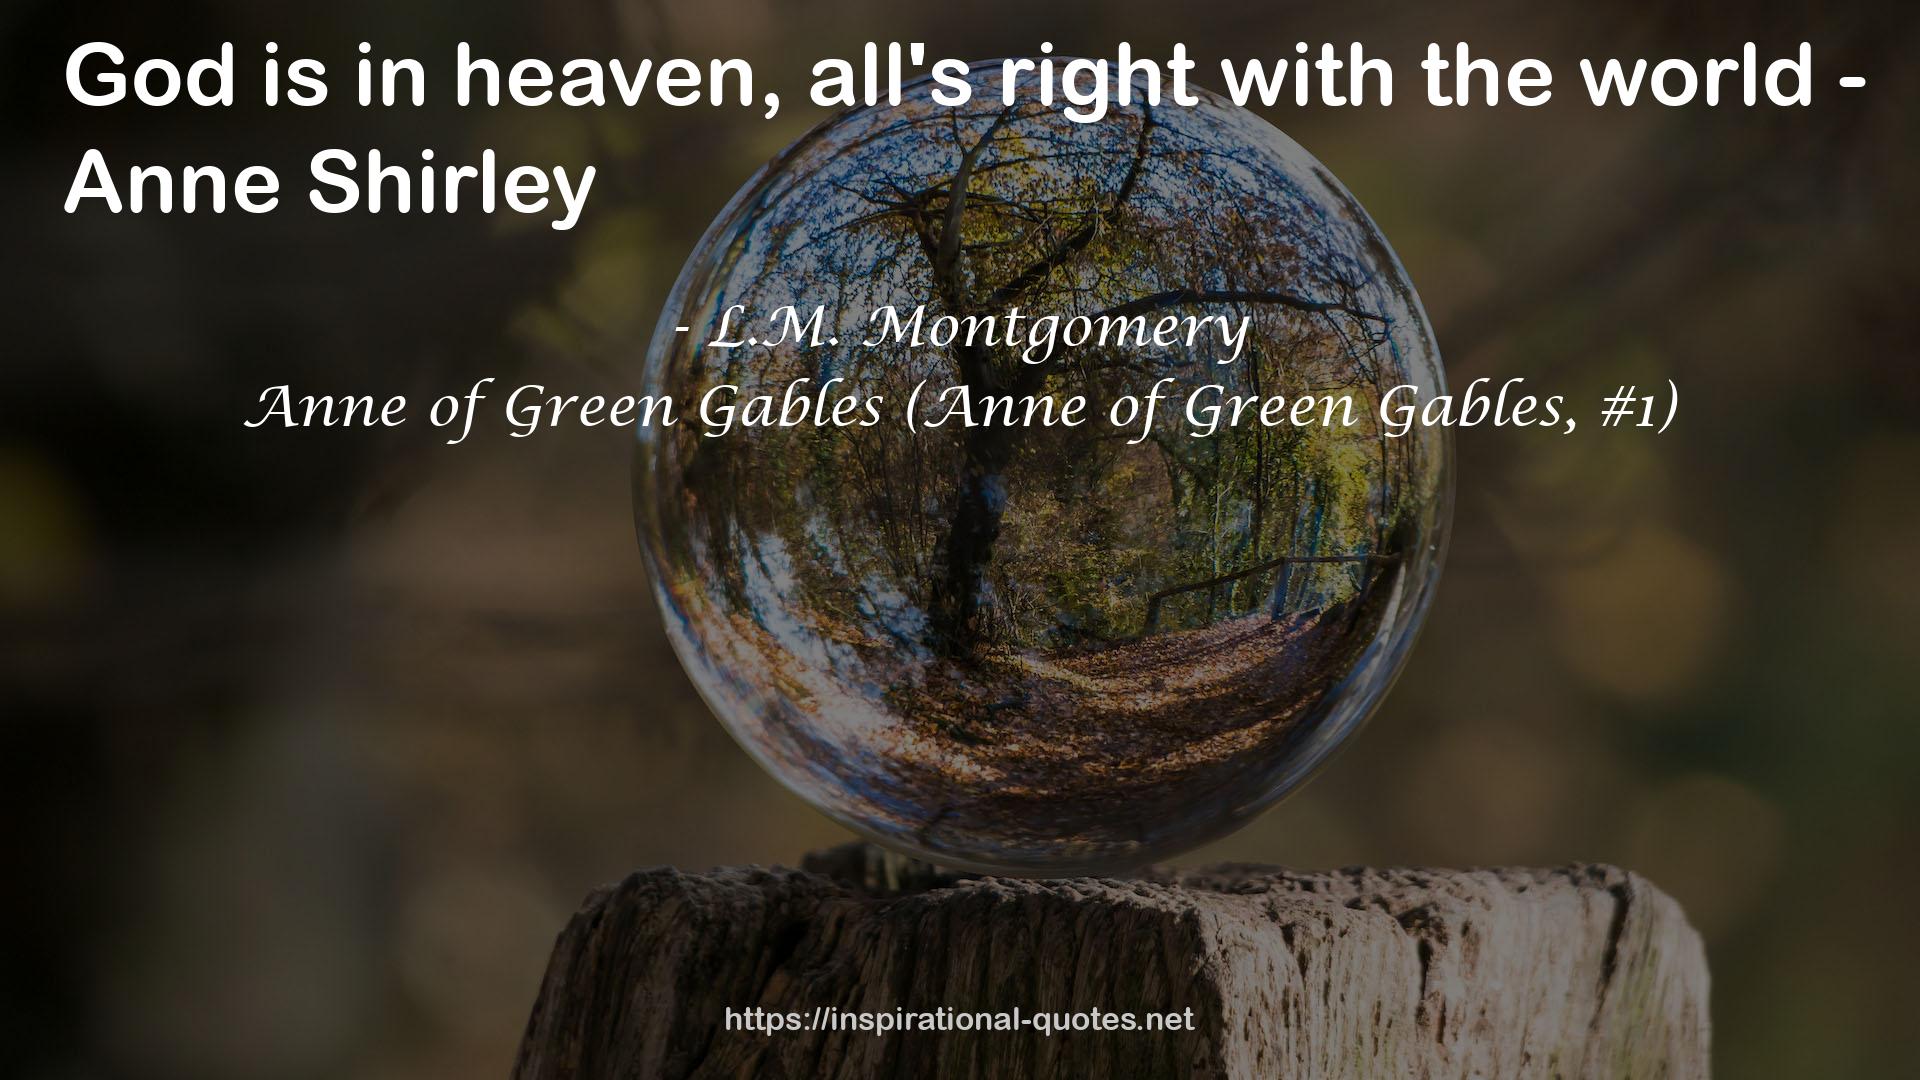 Anne of Green Gables (Anne of Green Gables, #1) QUOTES